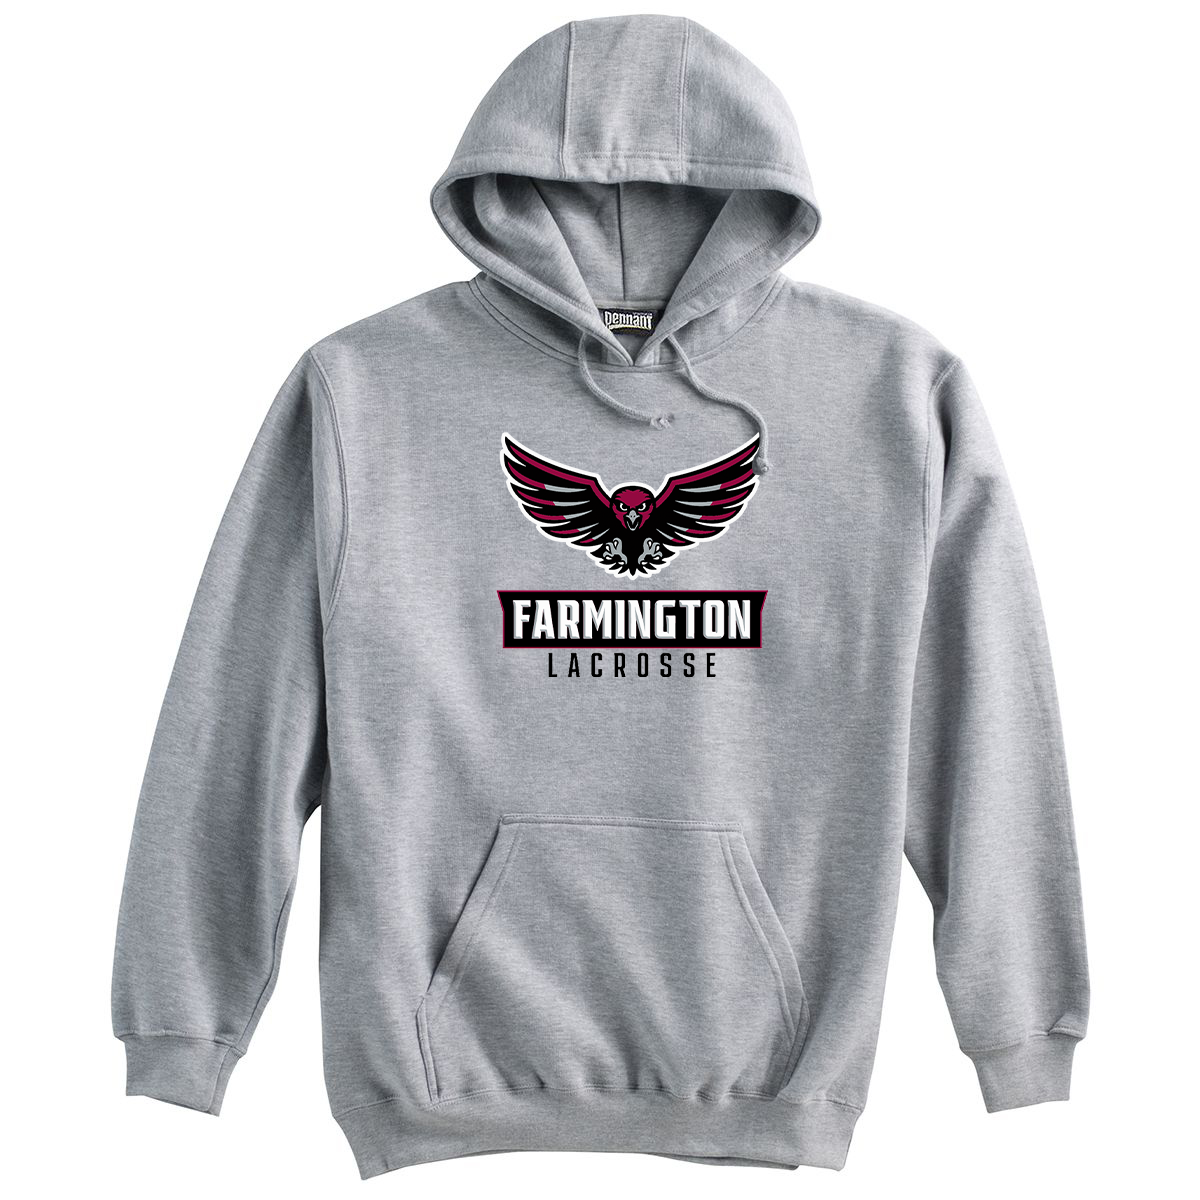 Farmington Lacrosse Sweatshirt